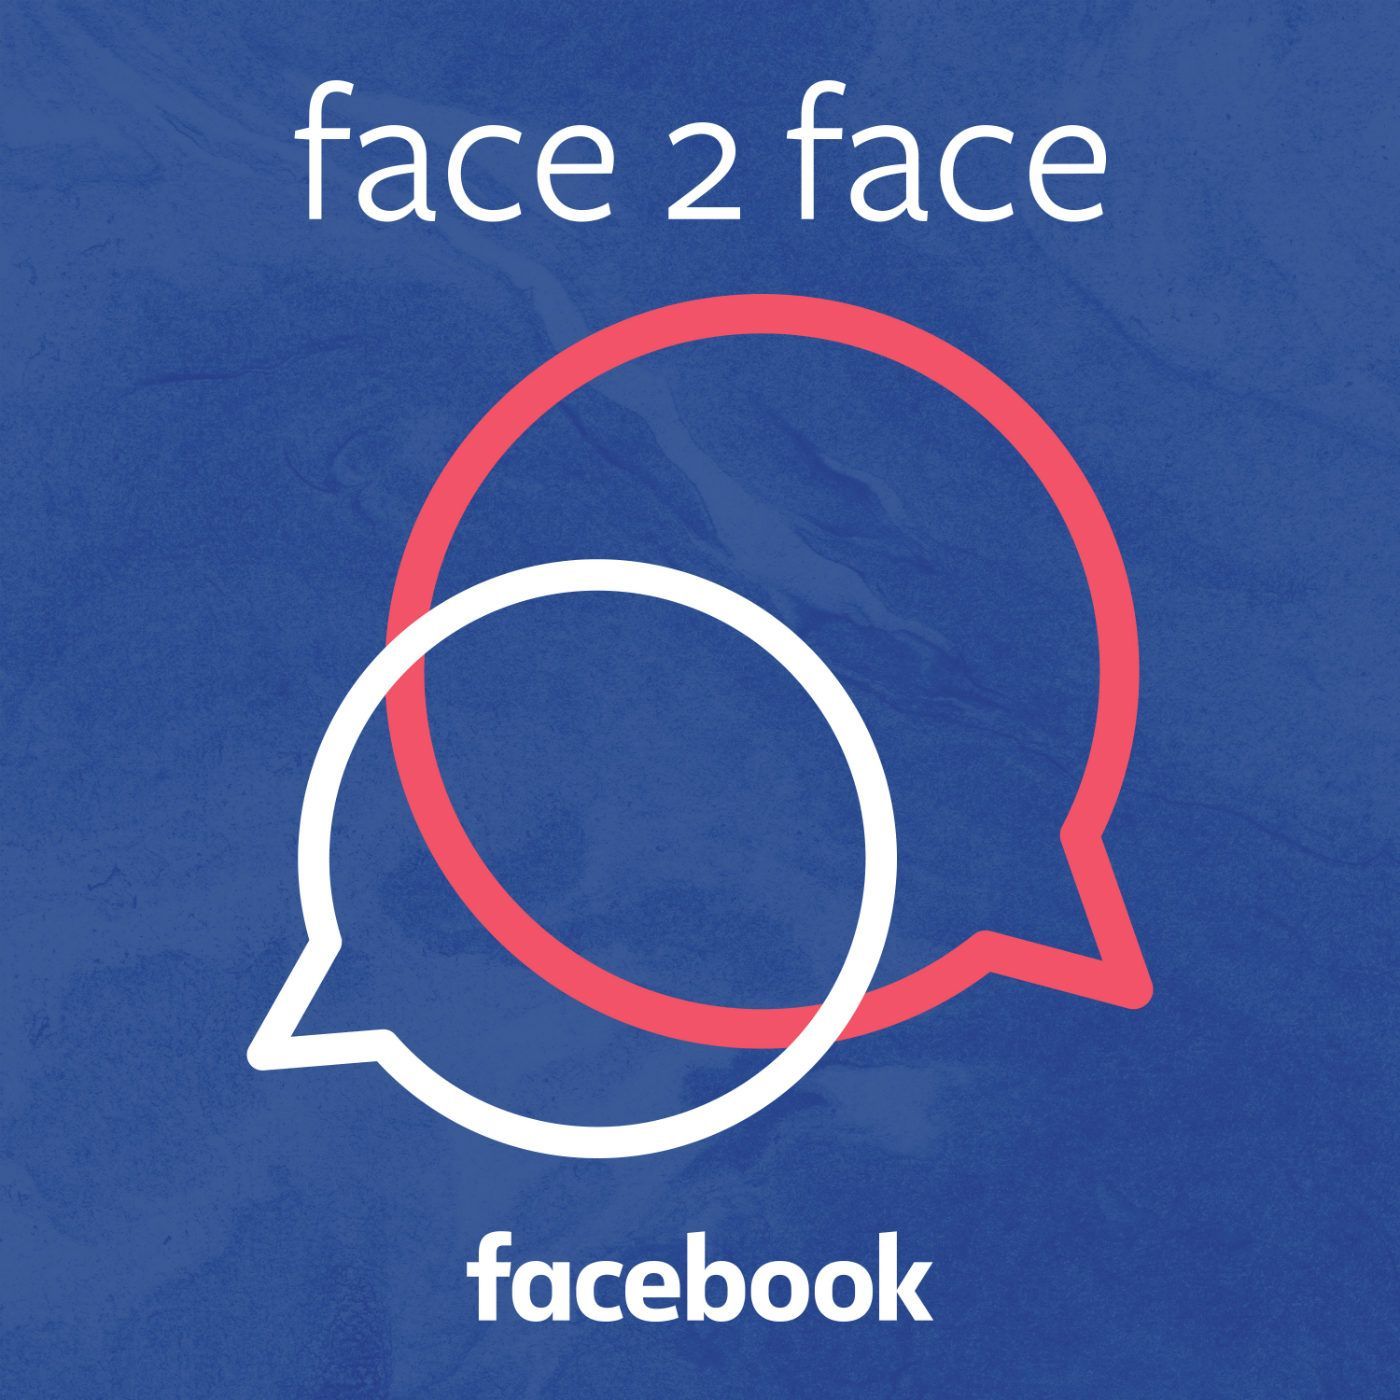 Introducing Face 2 Face